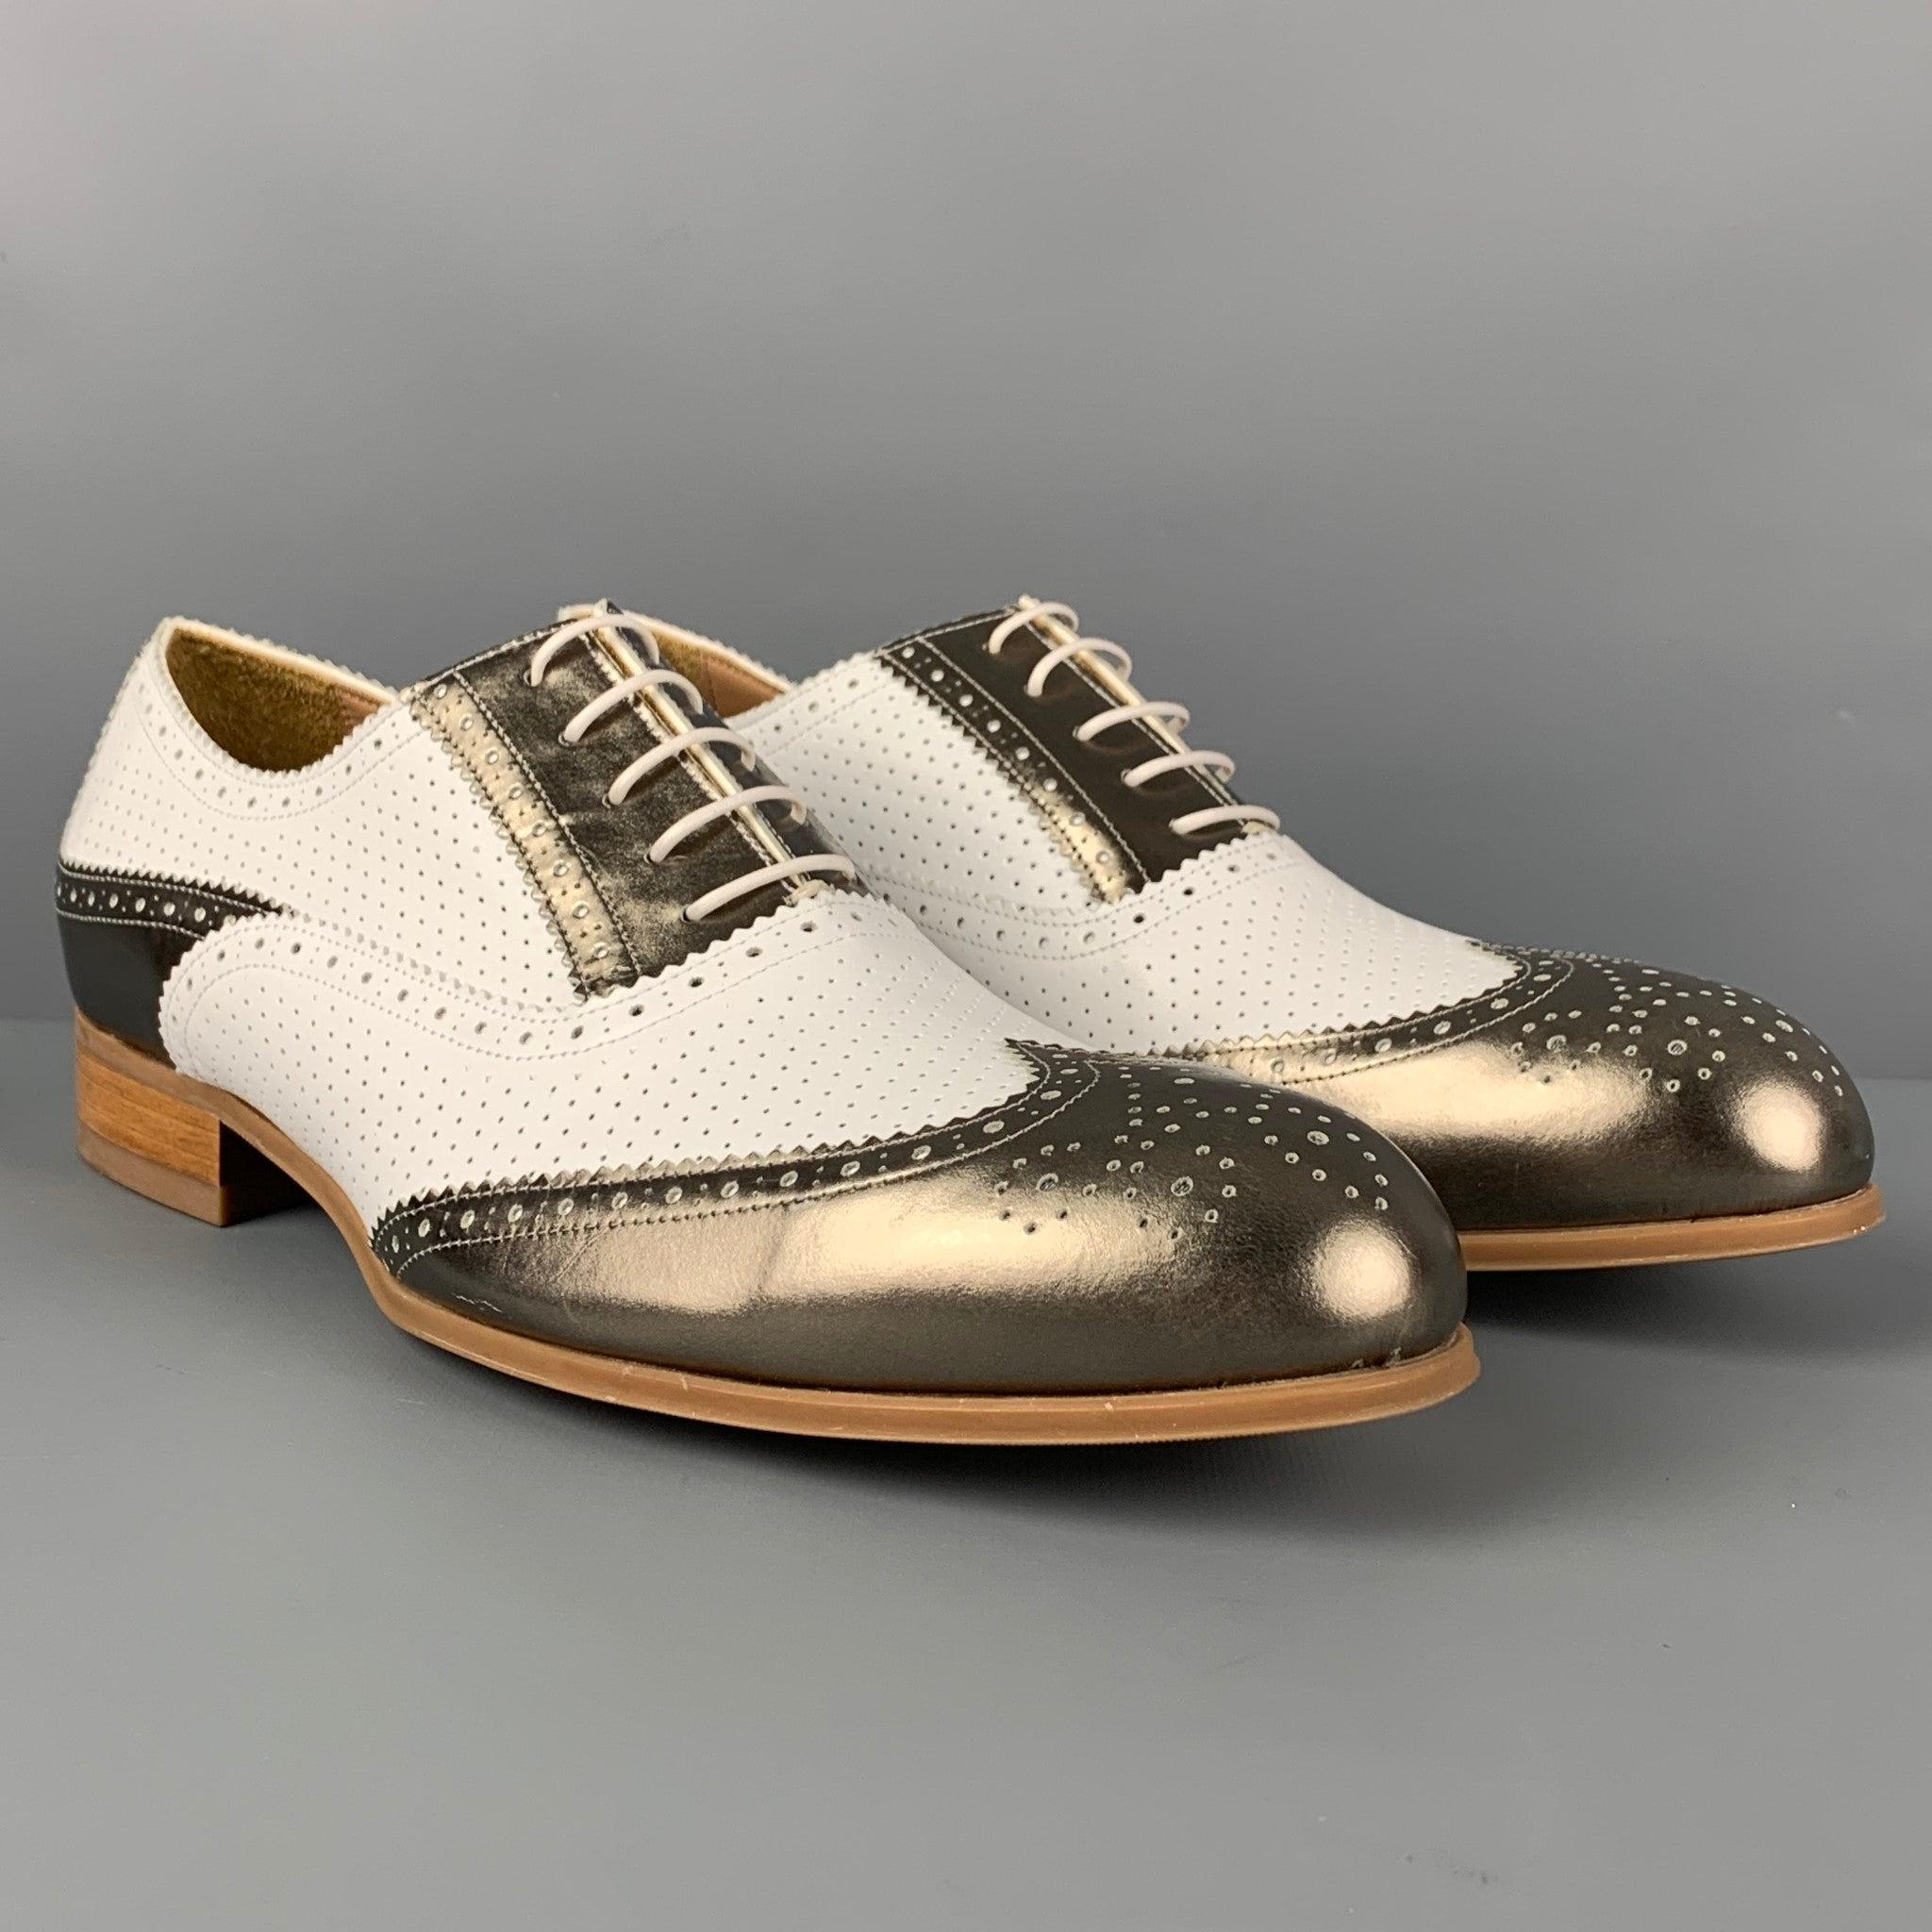 Les chaussures EMPORIO ARMANI sont en cuir perforé blanc avec une bordure métallique. Elles ont un style spectateur et se ferment par un lacet. Livré avec boîte. Fabriquées en Italie.
Excellent
Etat d'occasion. 

Marqué :   43.5 Semelle extérieure :